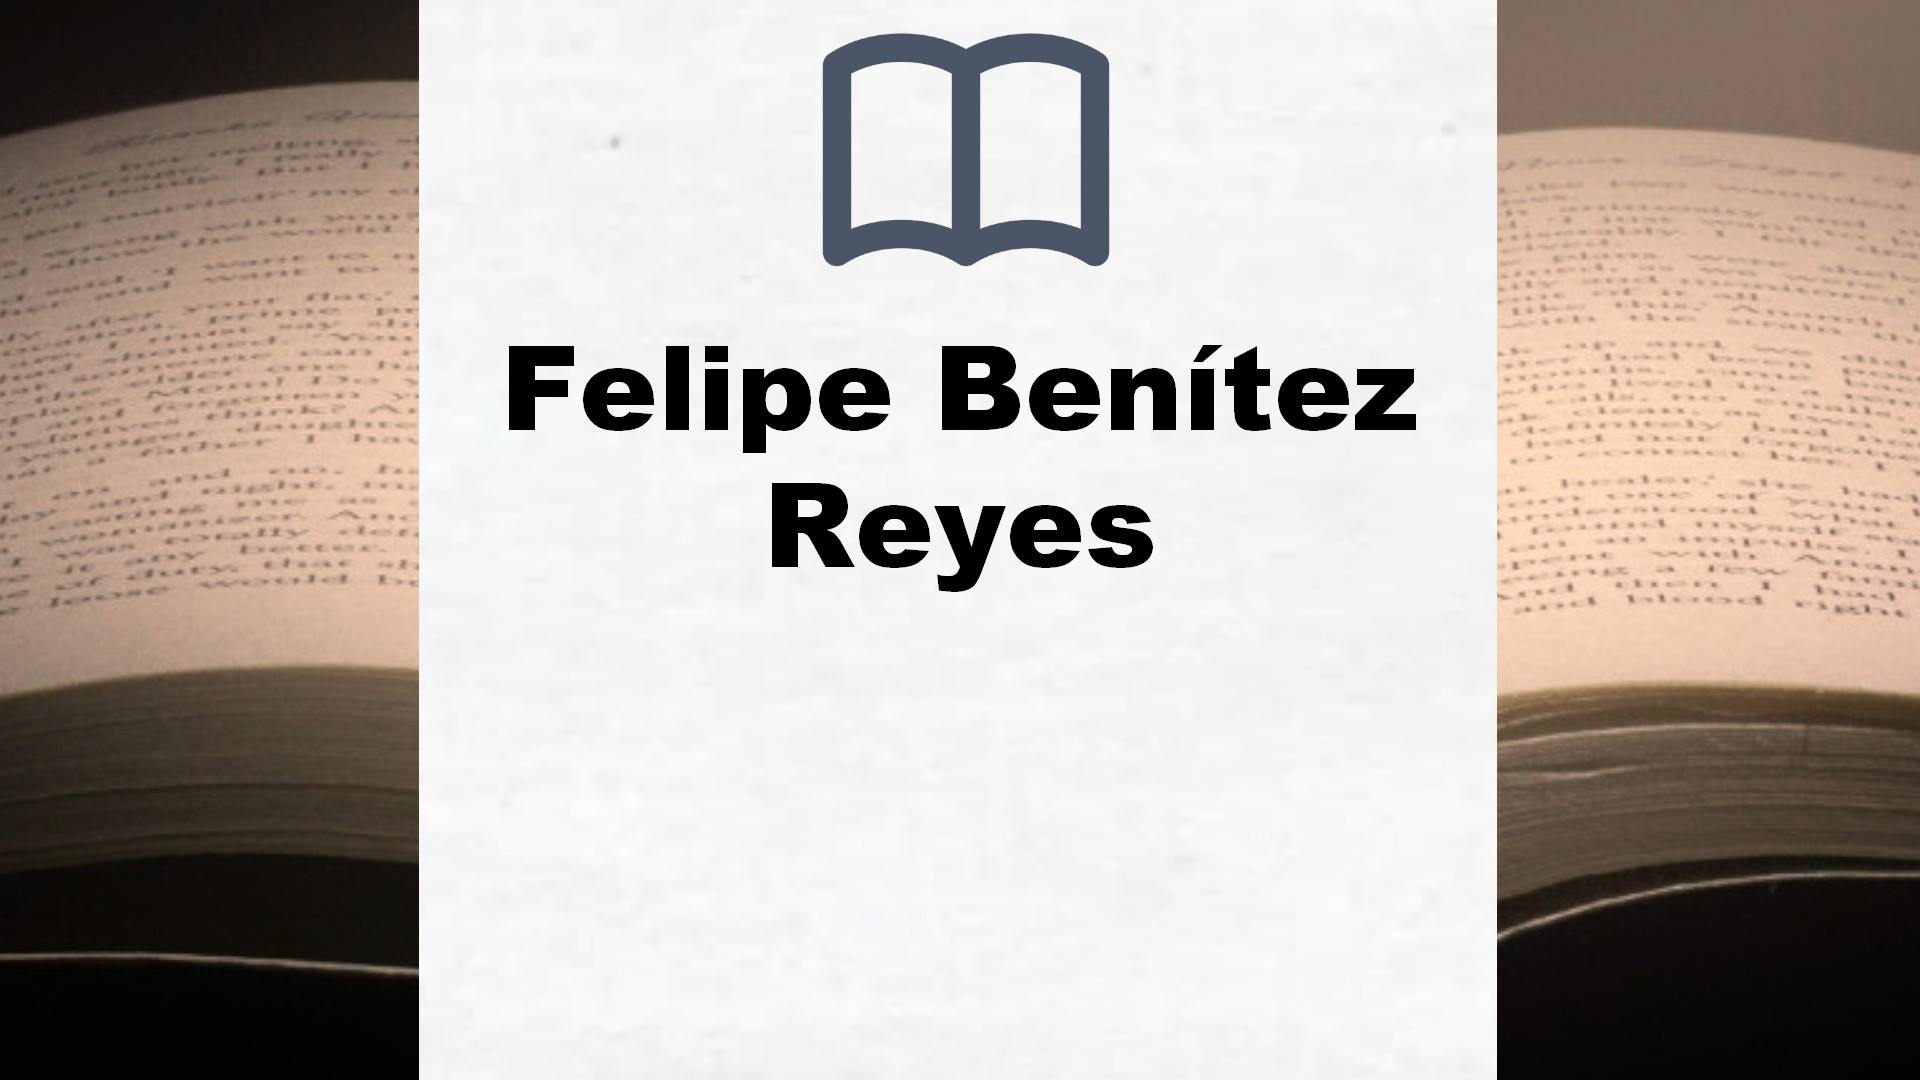 Libros Felipe Benítez Reyes